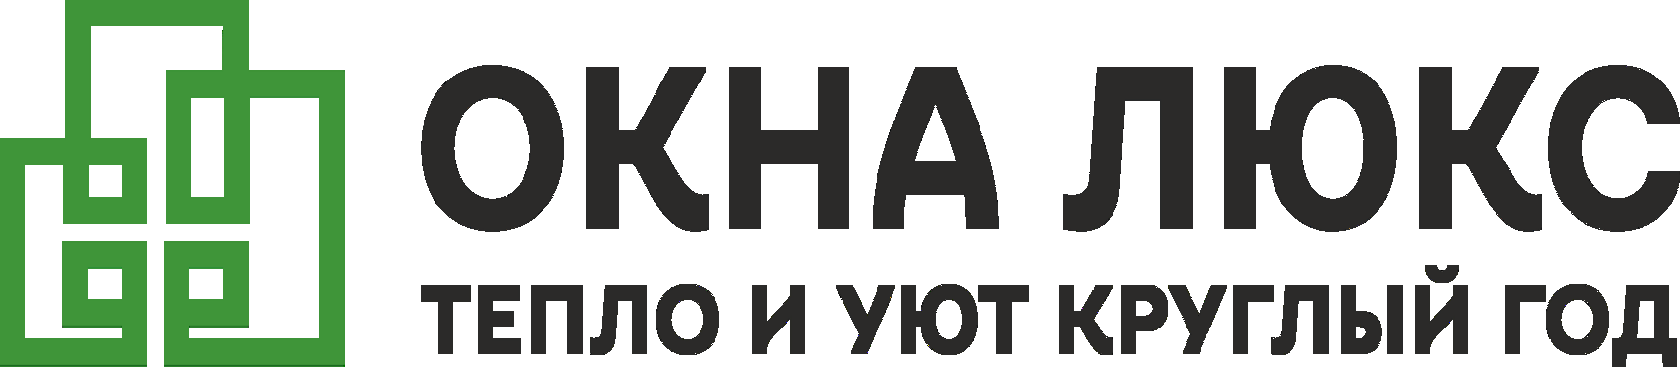 Логотип Окна люкс